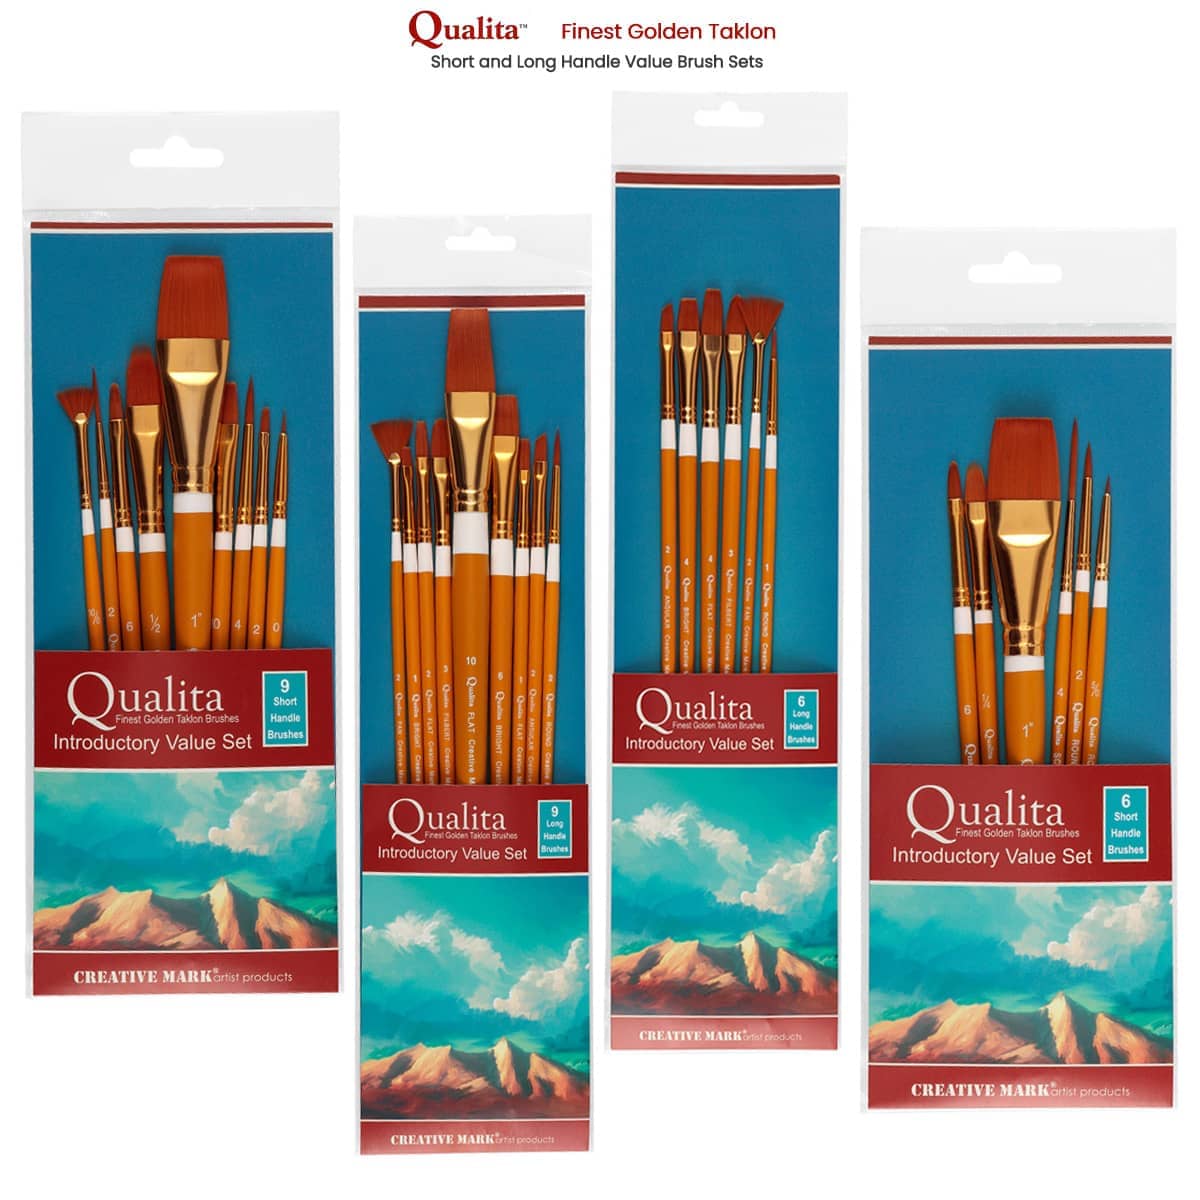 Qualita Golden Taklon Value Brush Sets